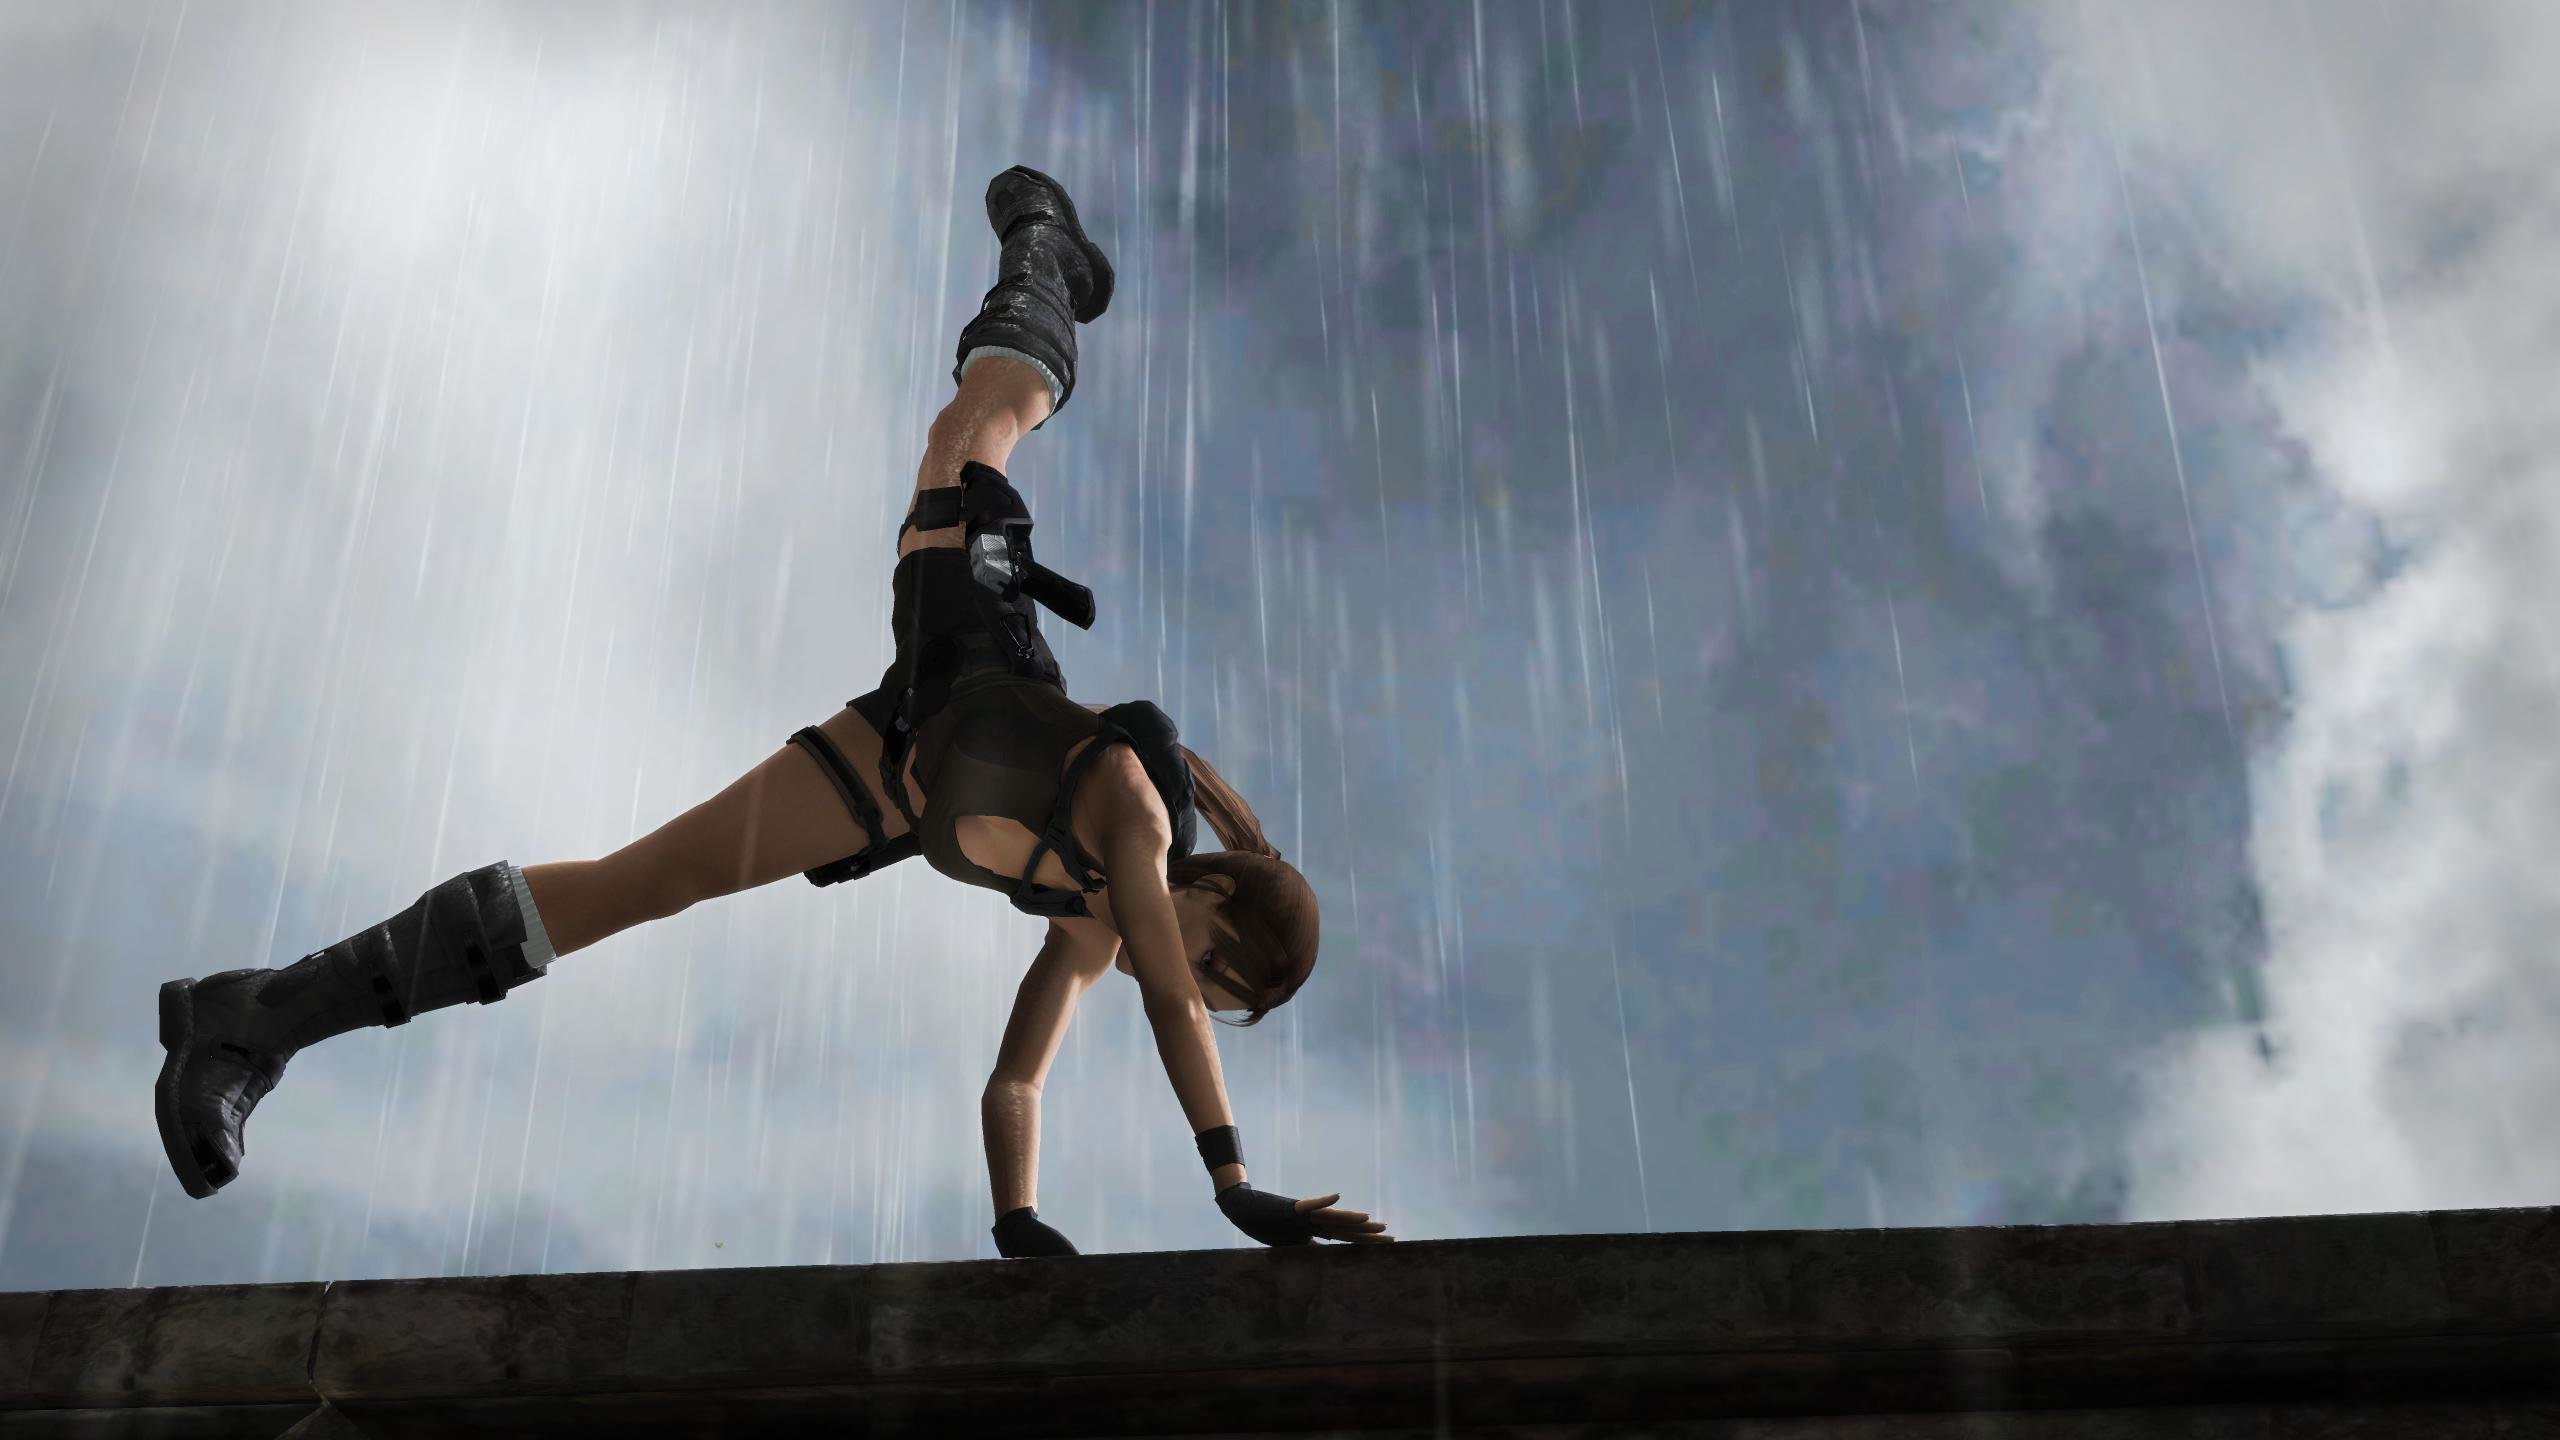 Free download Tomb Raider (Lara Croft) wallpaper ID:437005 hd 2560x1440 for computer